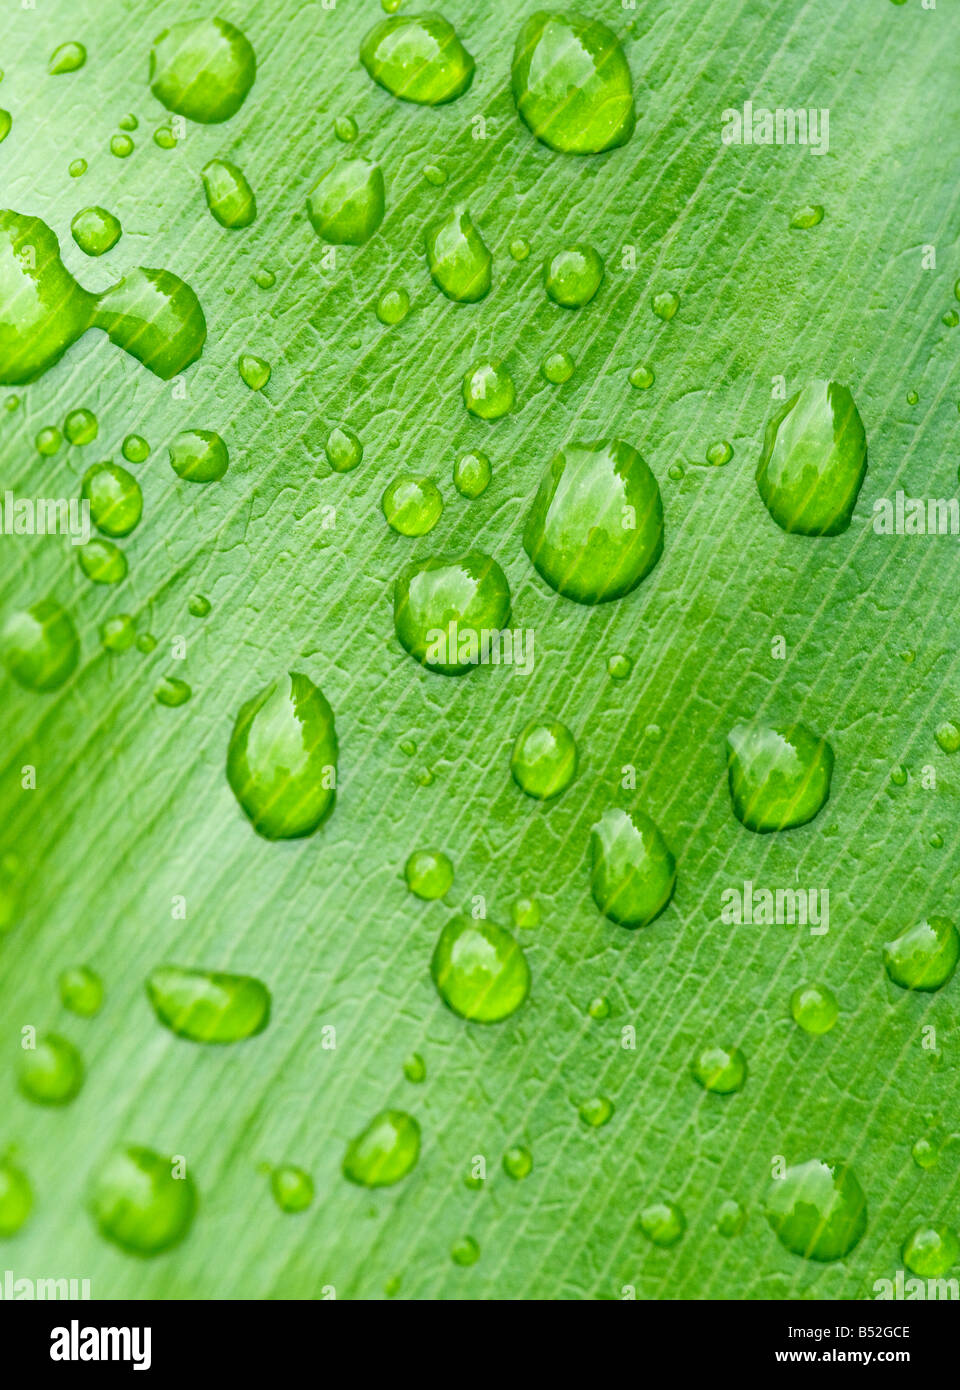 Grande immagine di gocce d'acqua sulla lamina Foto Stock